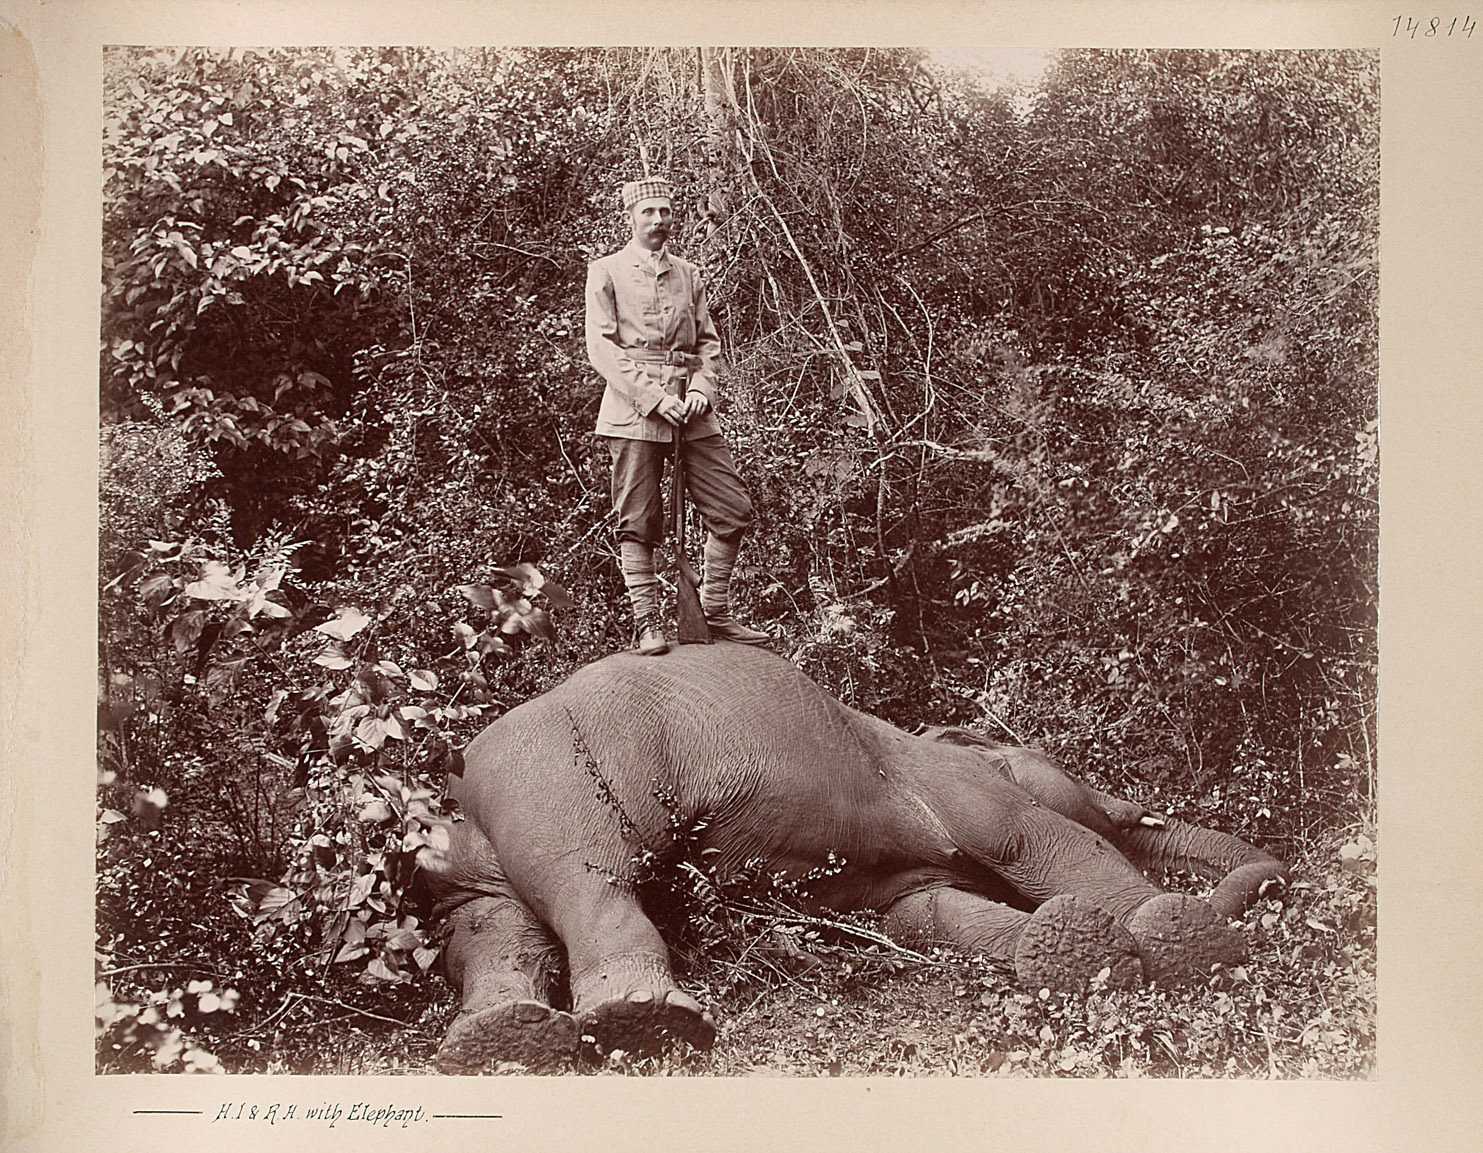 Sr k.u.k. Hoheit beim erlegten Elephanten von Charles Kerr